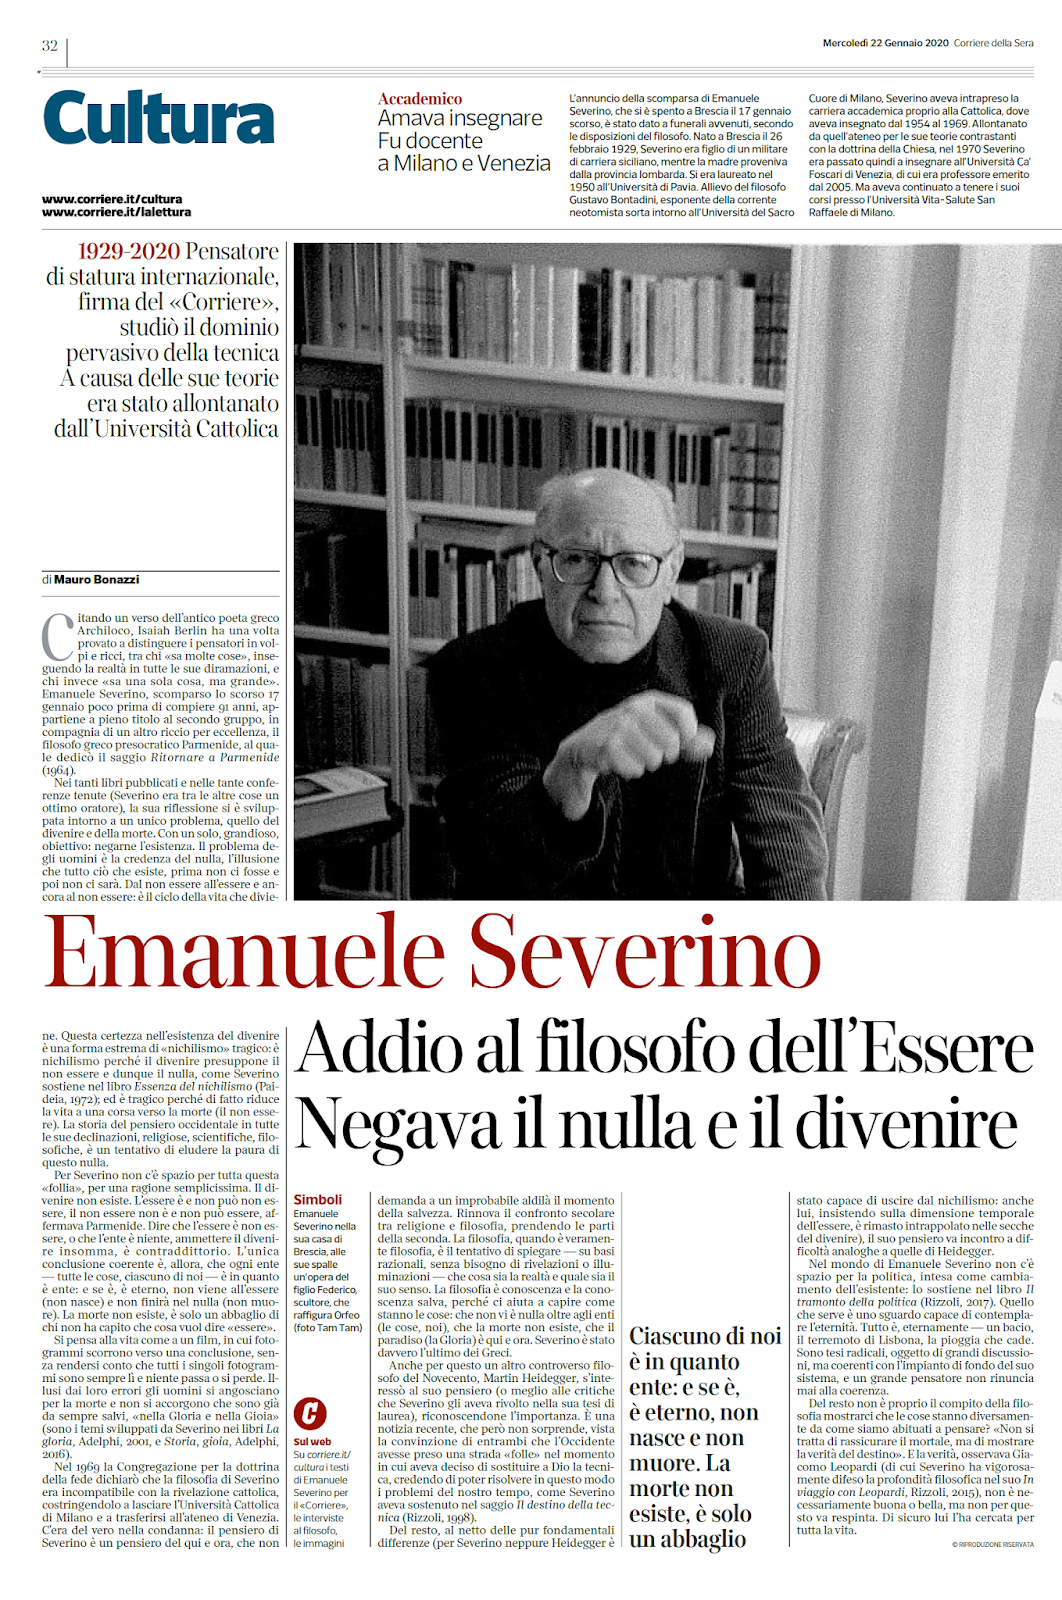 Addio a Emanuele Severino, il grande filosofo dell'eterno: aveva